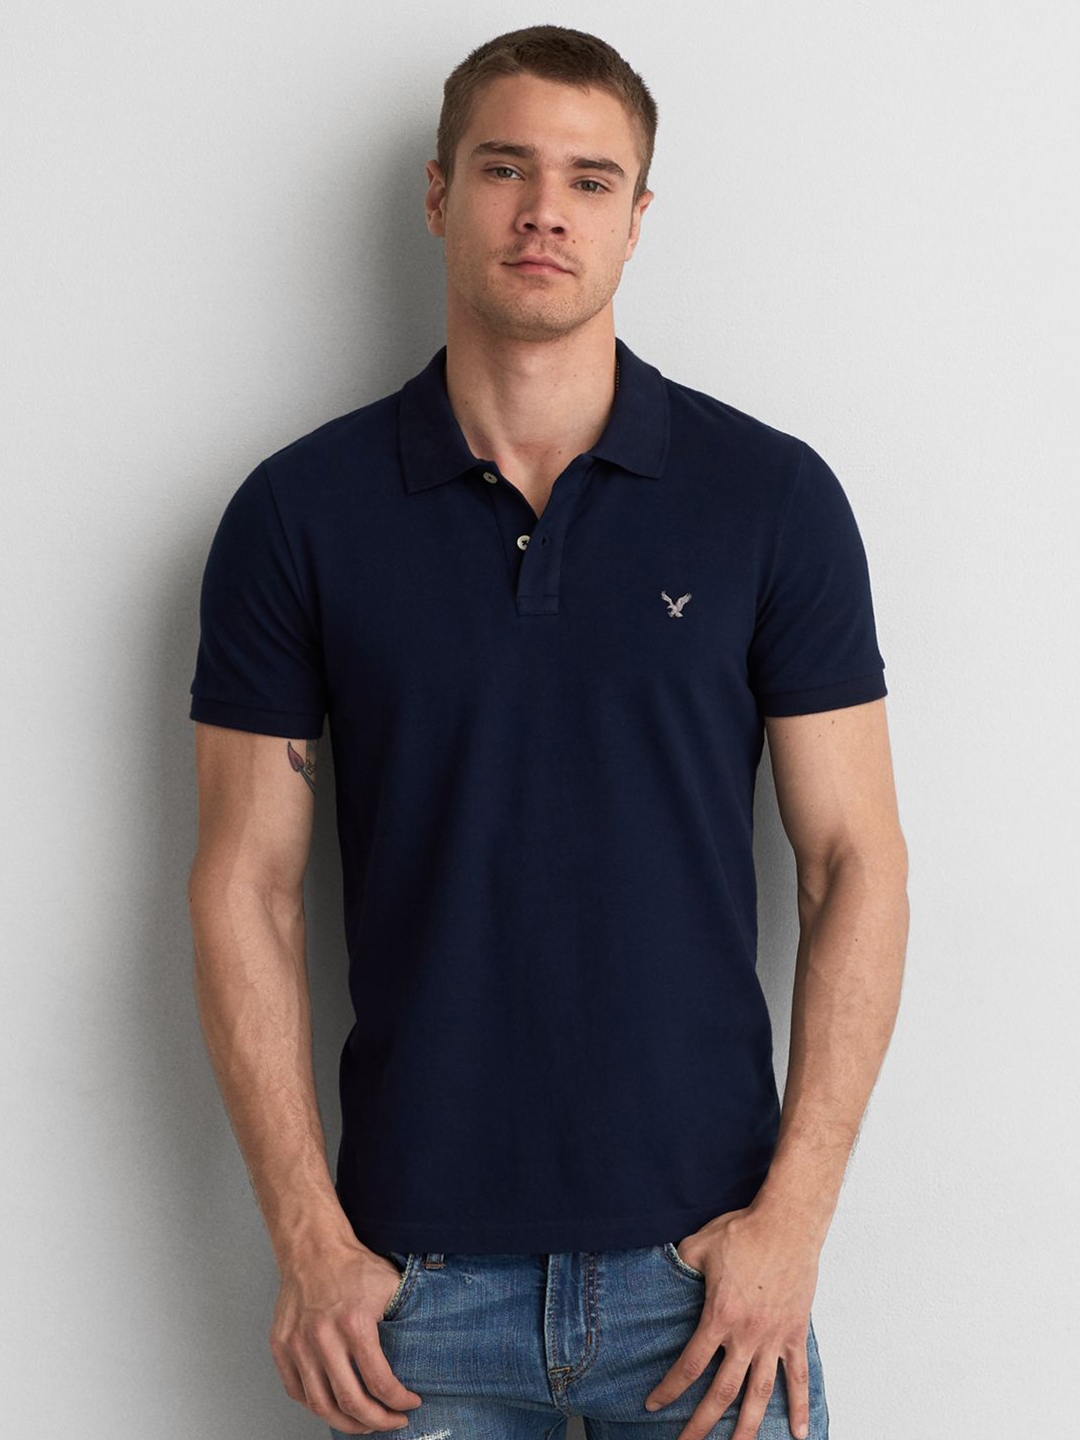 Besætte Gør alt med min kraft kollektion Buy AMERICAN EAGLE OUTFITTERS Men Navy Blue Solid Polo Collar T Shirt -  Tshirts for Men 5389092 | Myntra